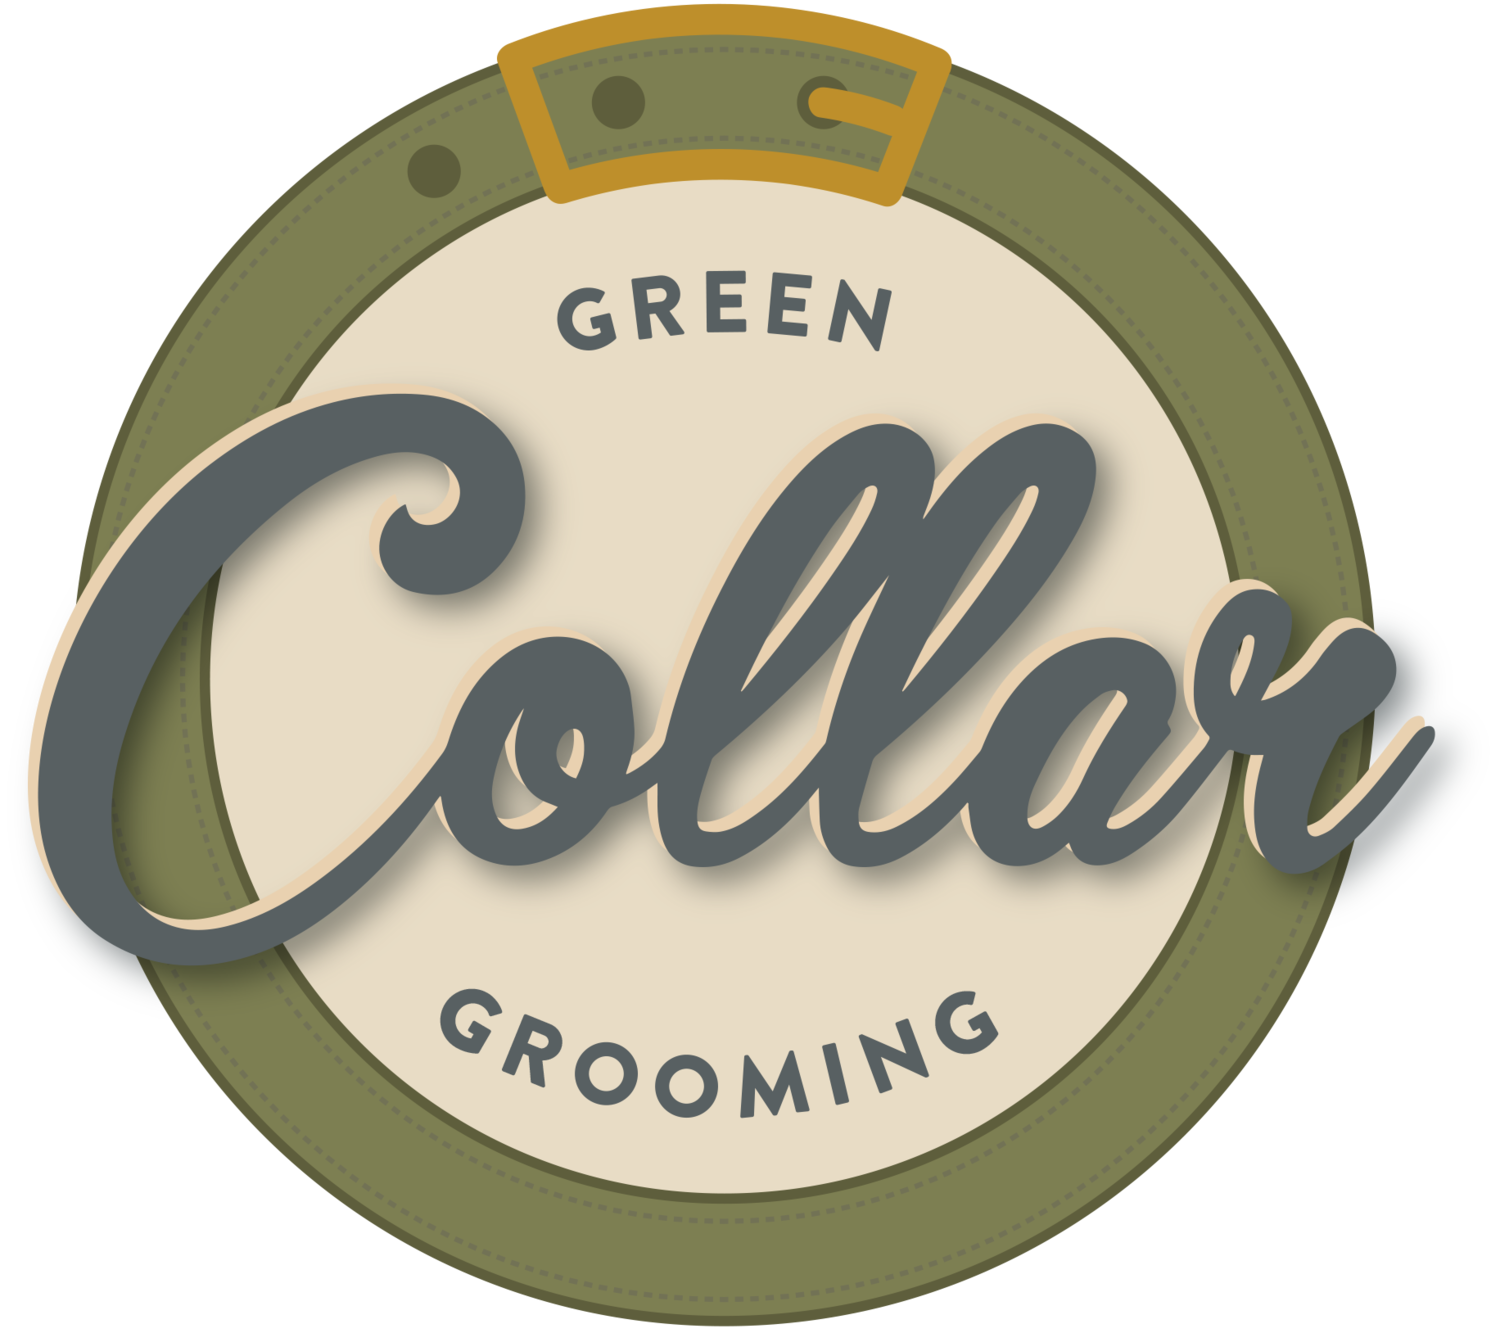 Green Collar Grooming